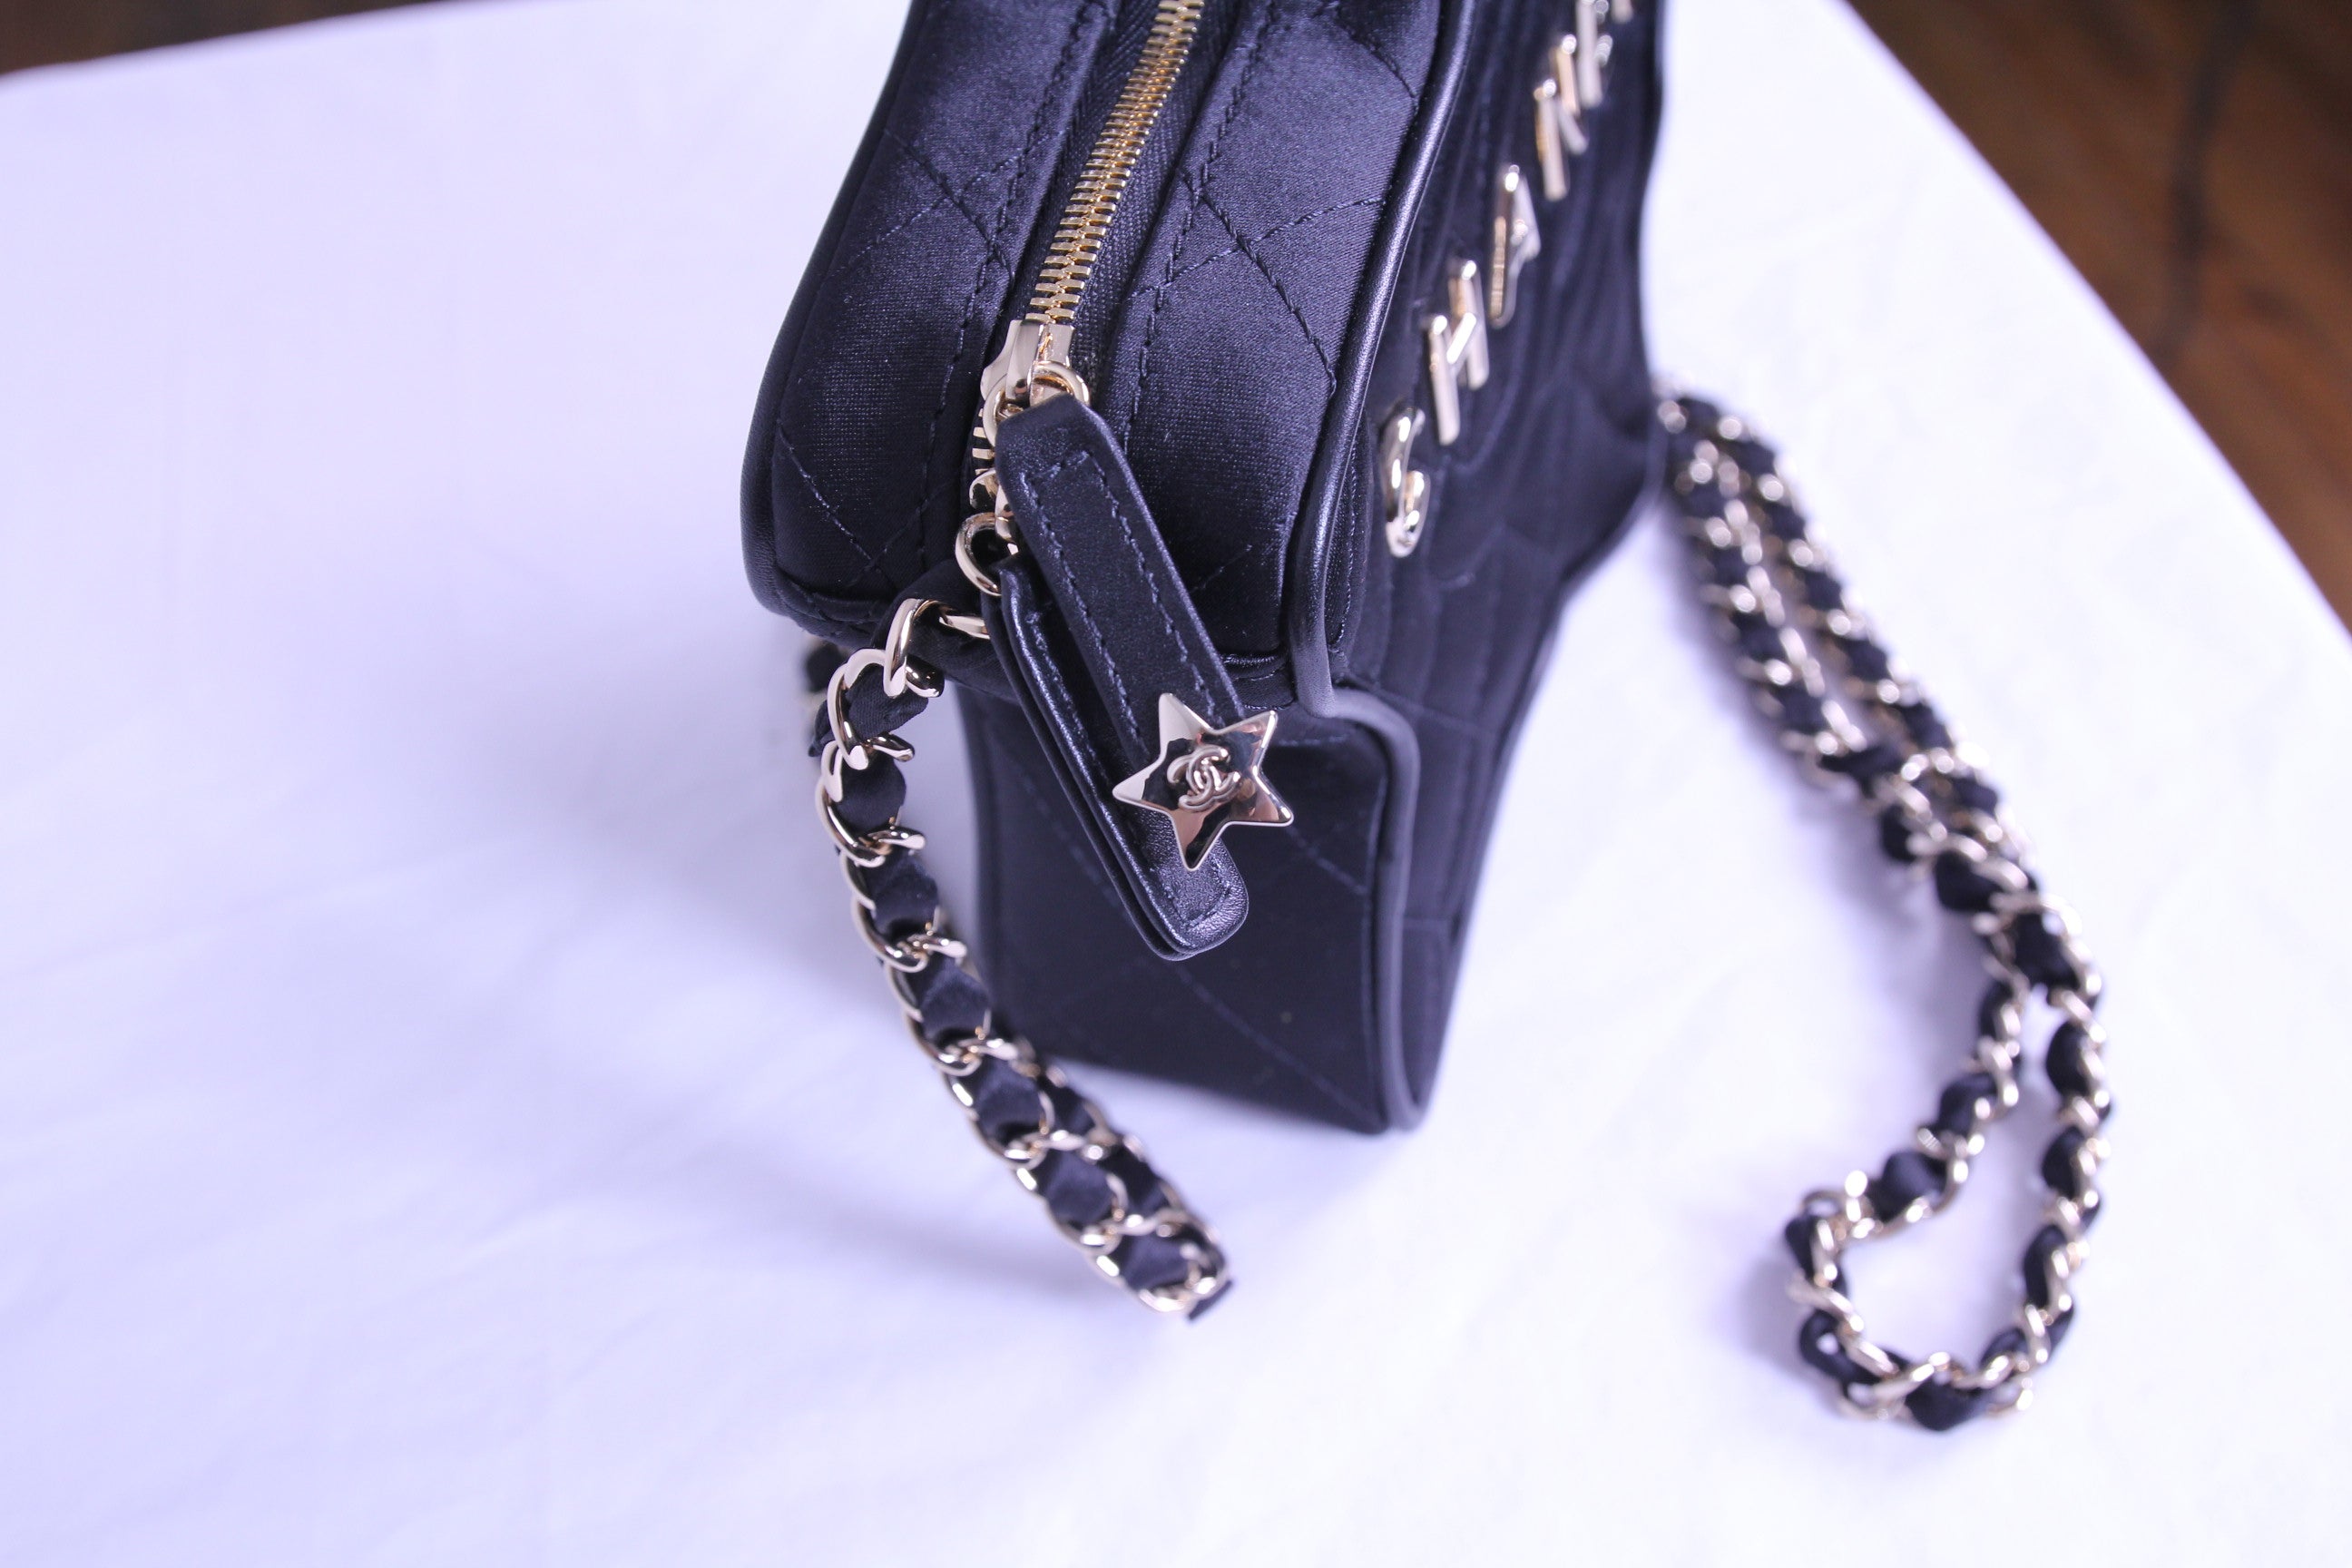 Zipper of Chanel star handbag in finished in black satin